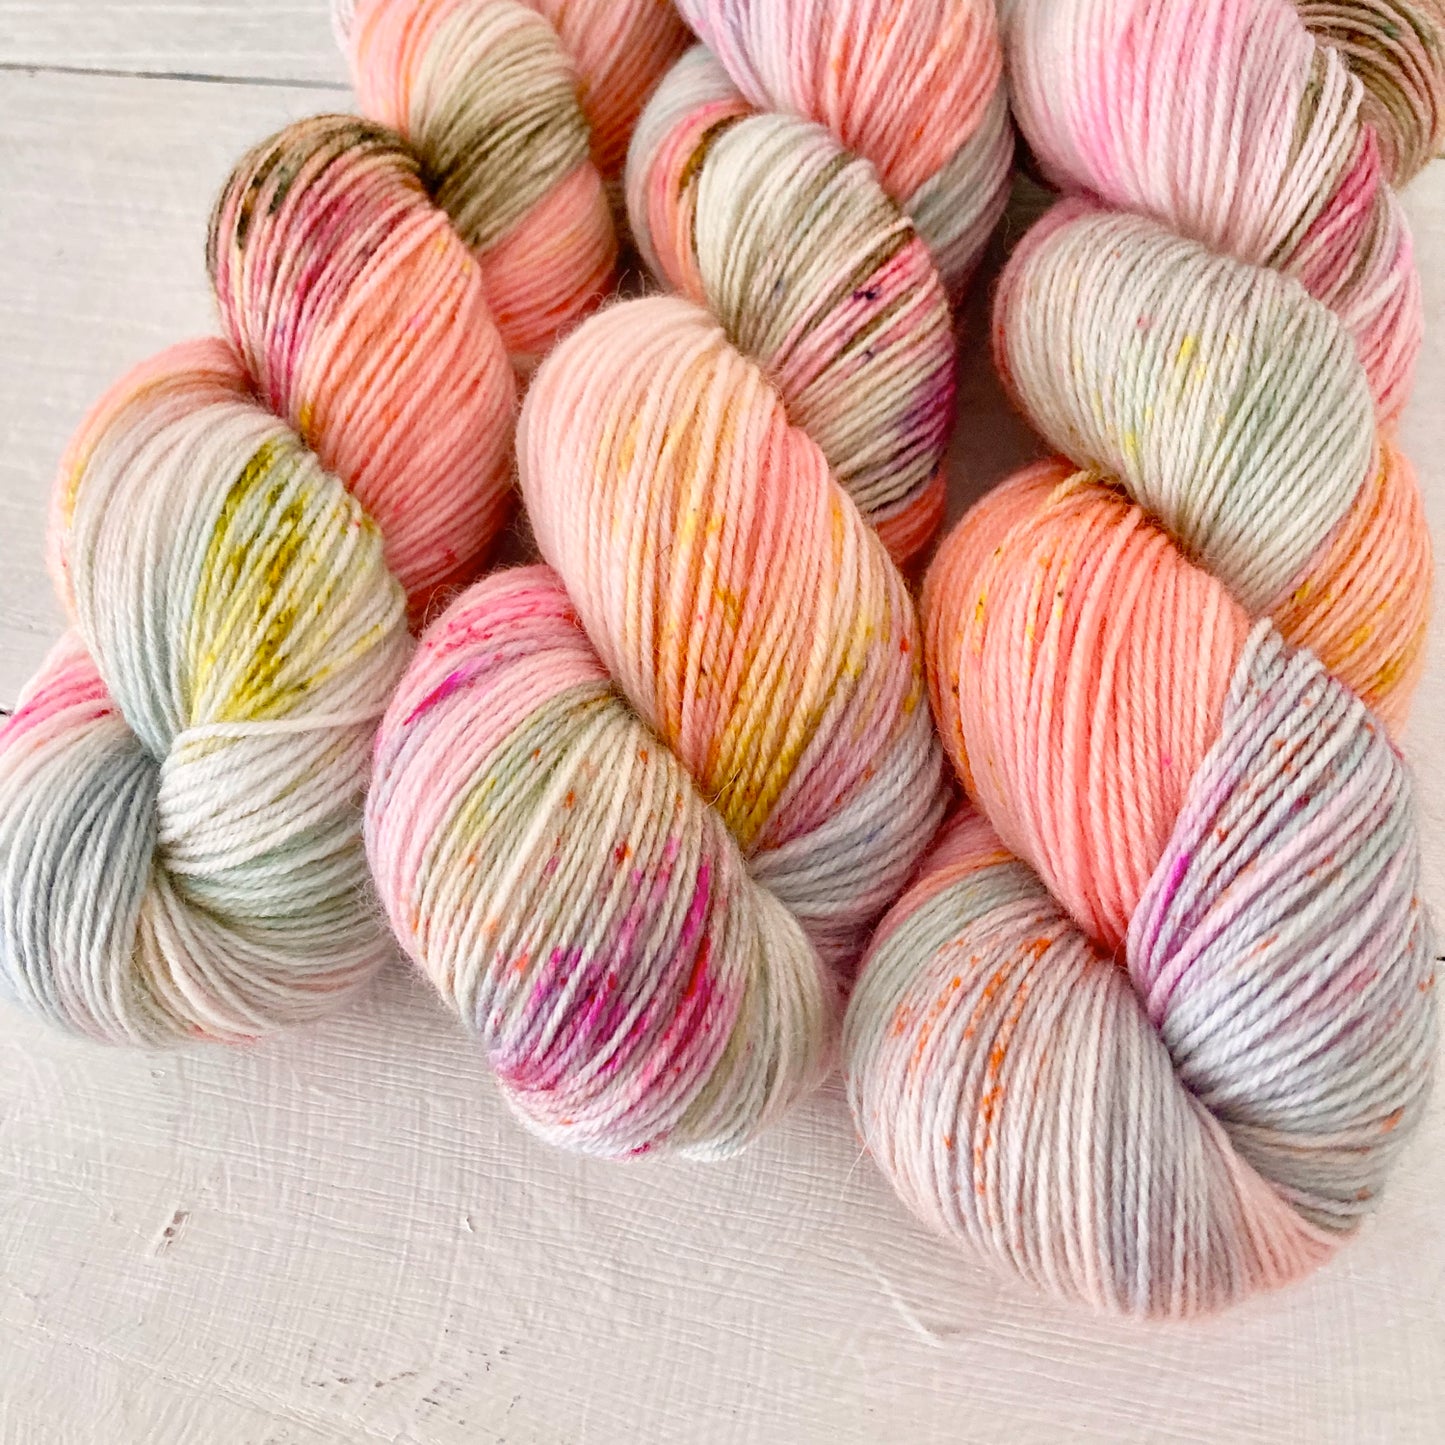 Hand-dyed yarn No.241 sock yarn "L'enfant et les sortilèges"